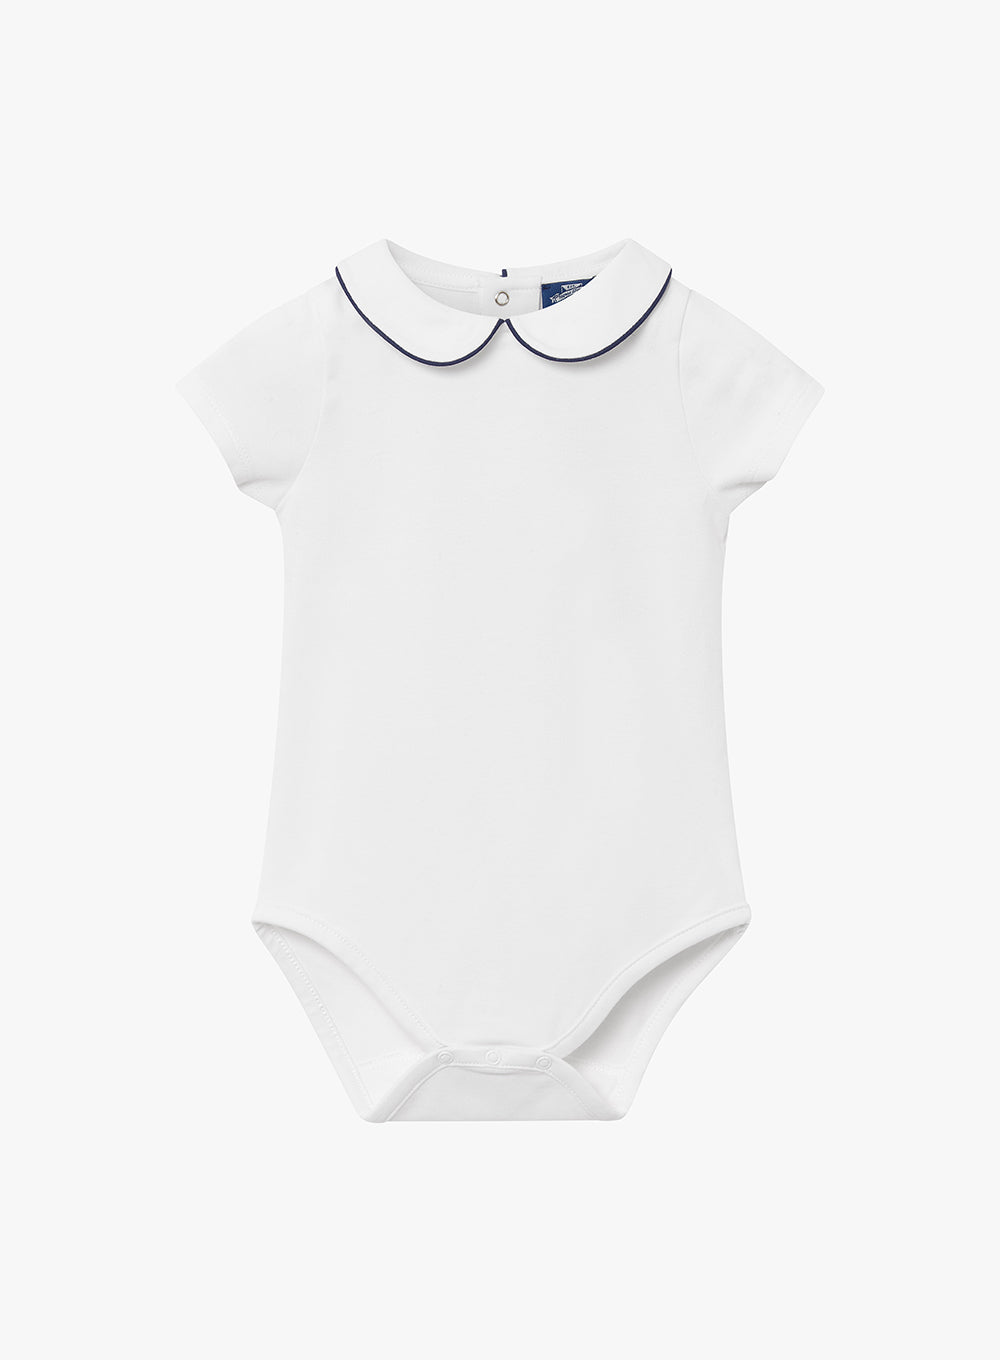 Baby Short-Sleeved Milo Bodysuit in White/Navy